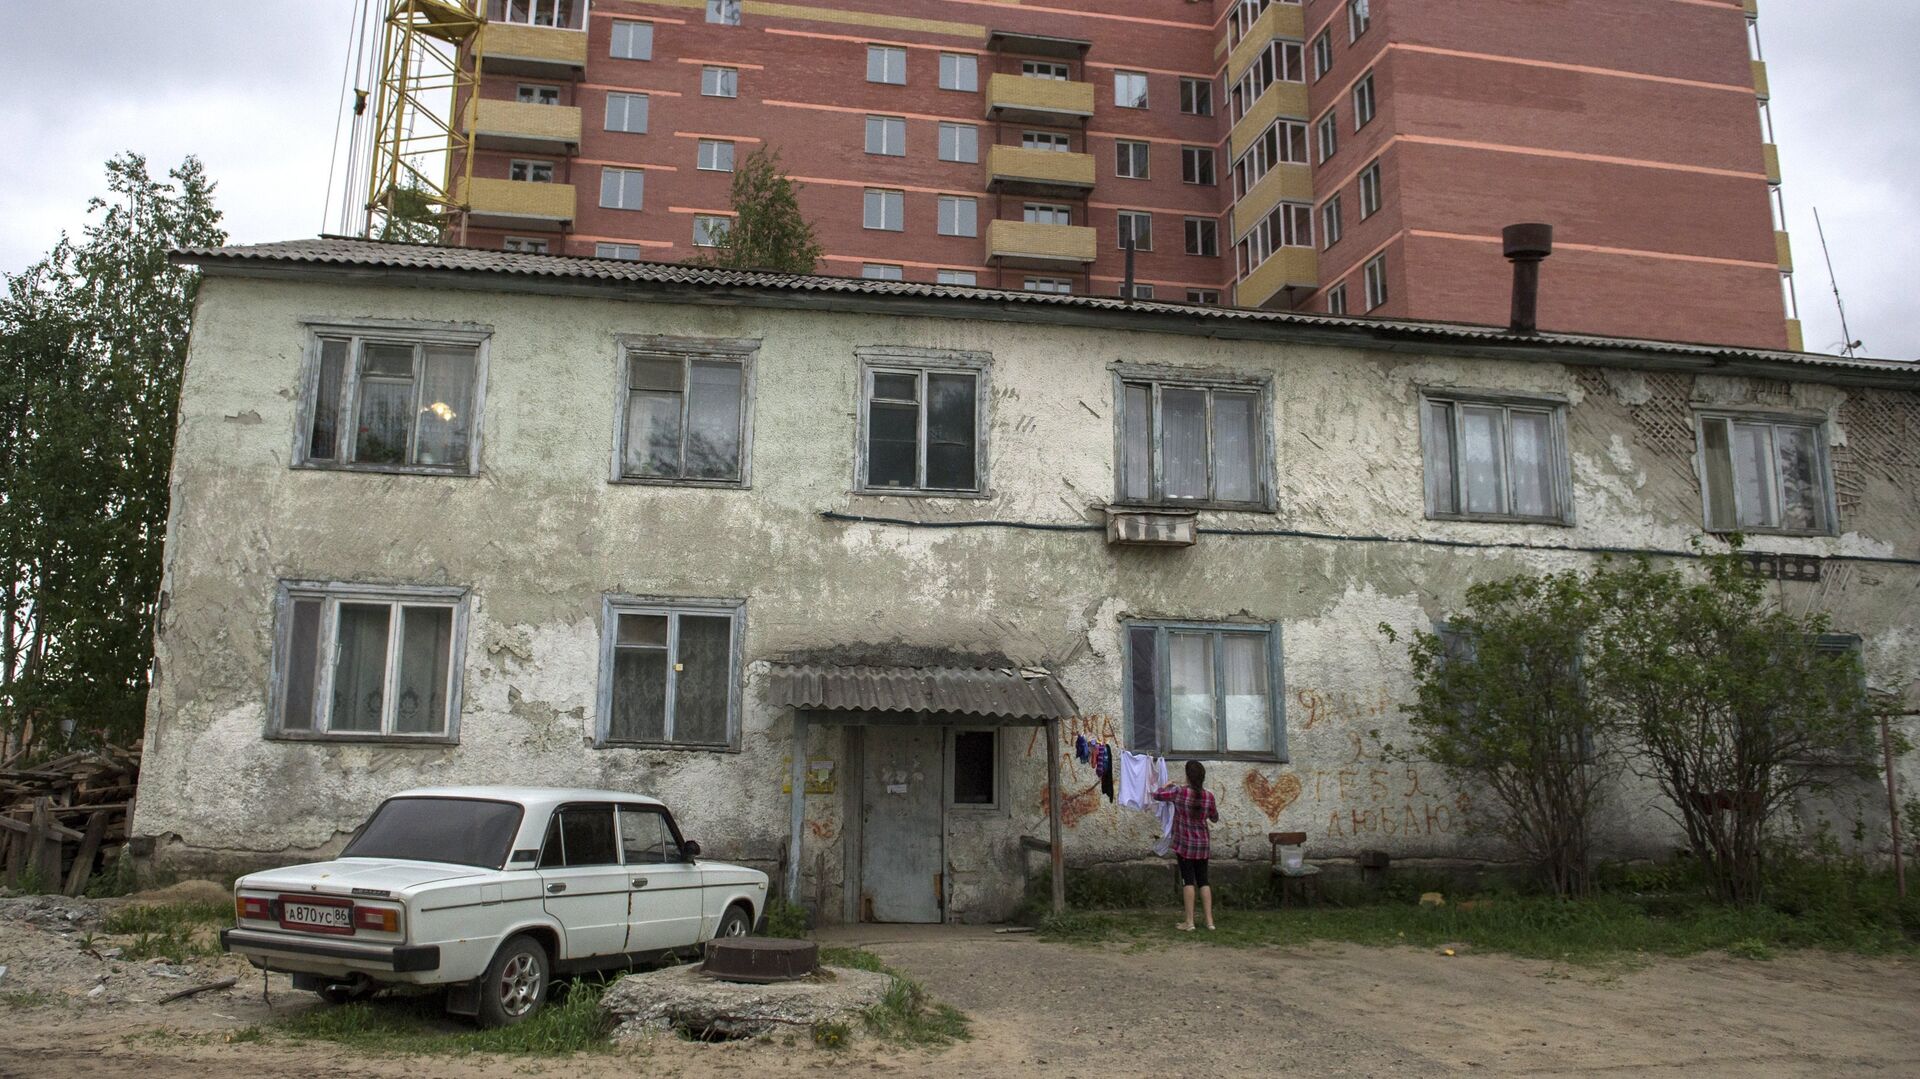 Ветхий жилой дом на фоне новостройки  - РИА Новости, 1920, 24.06.2021